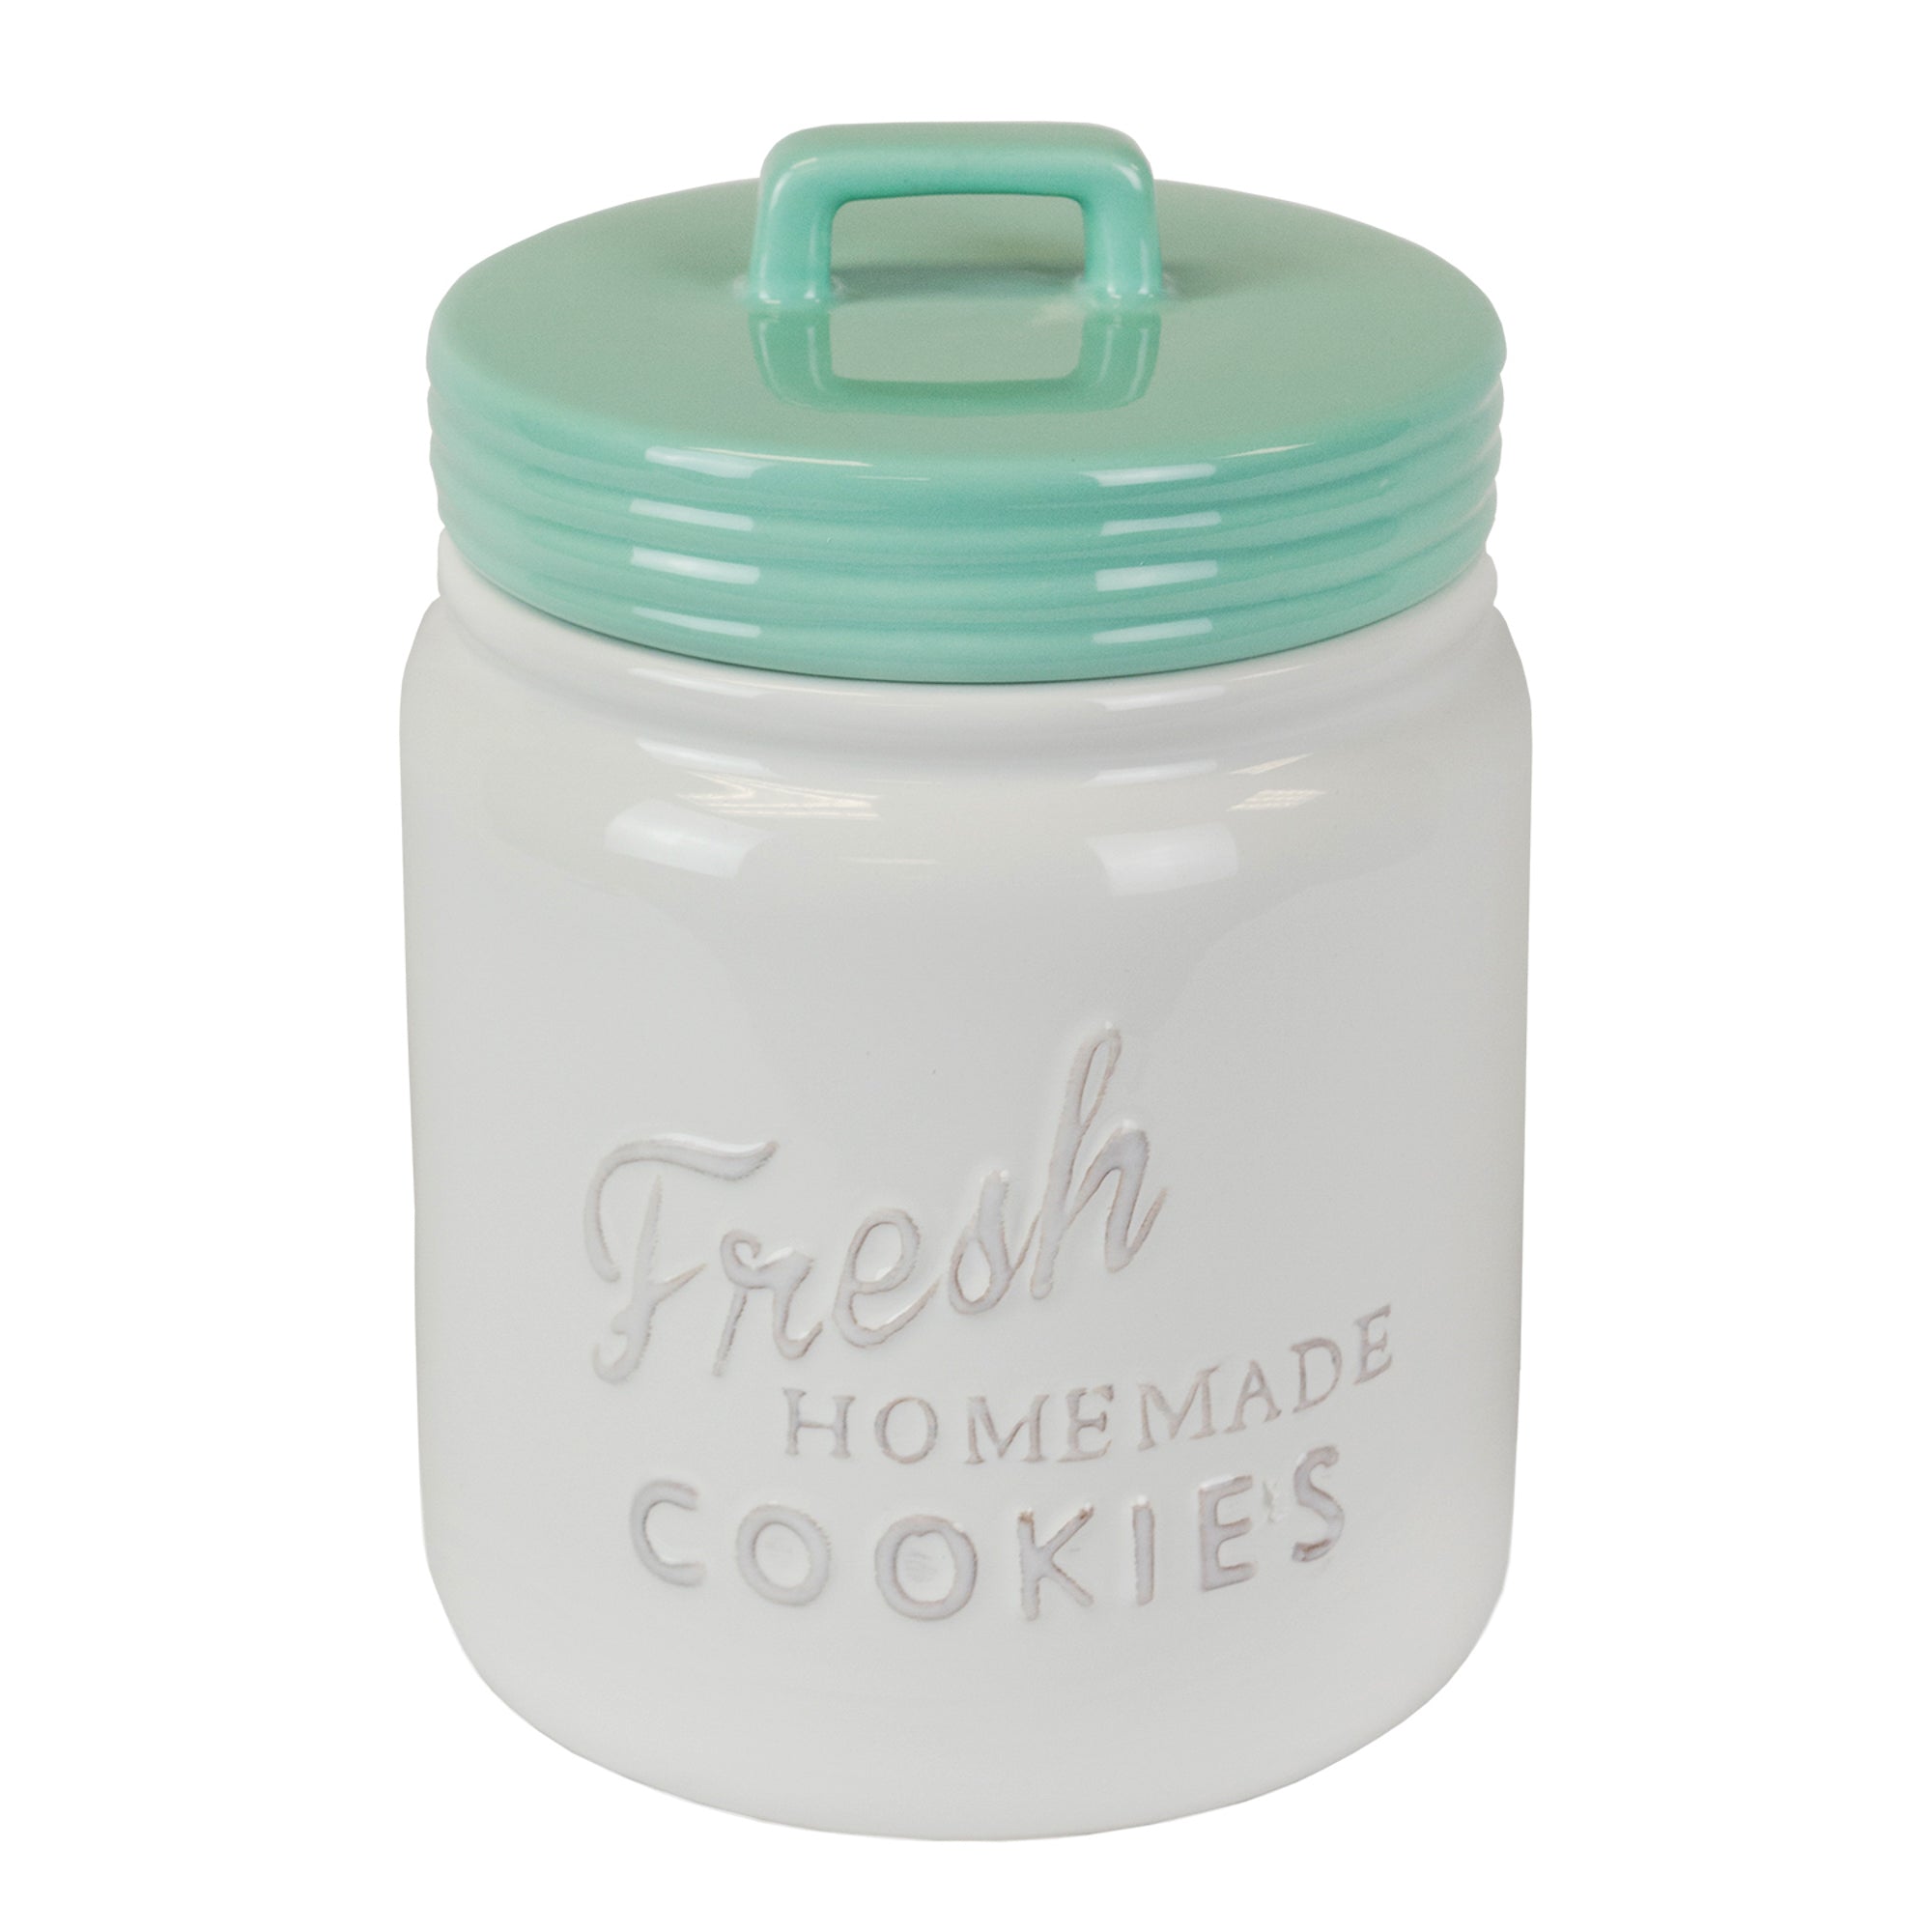 Aqua Ceramic Cookie Jar